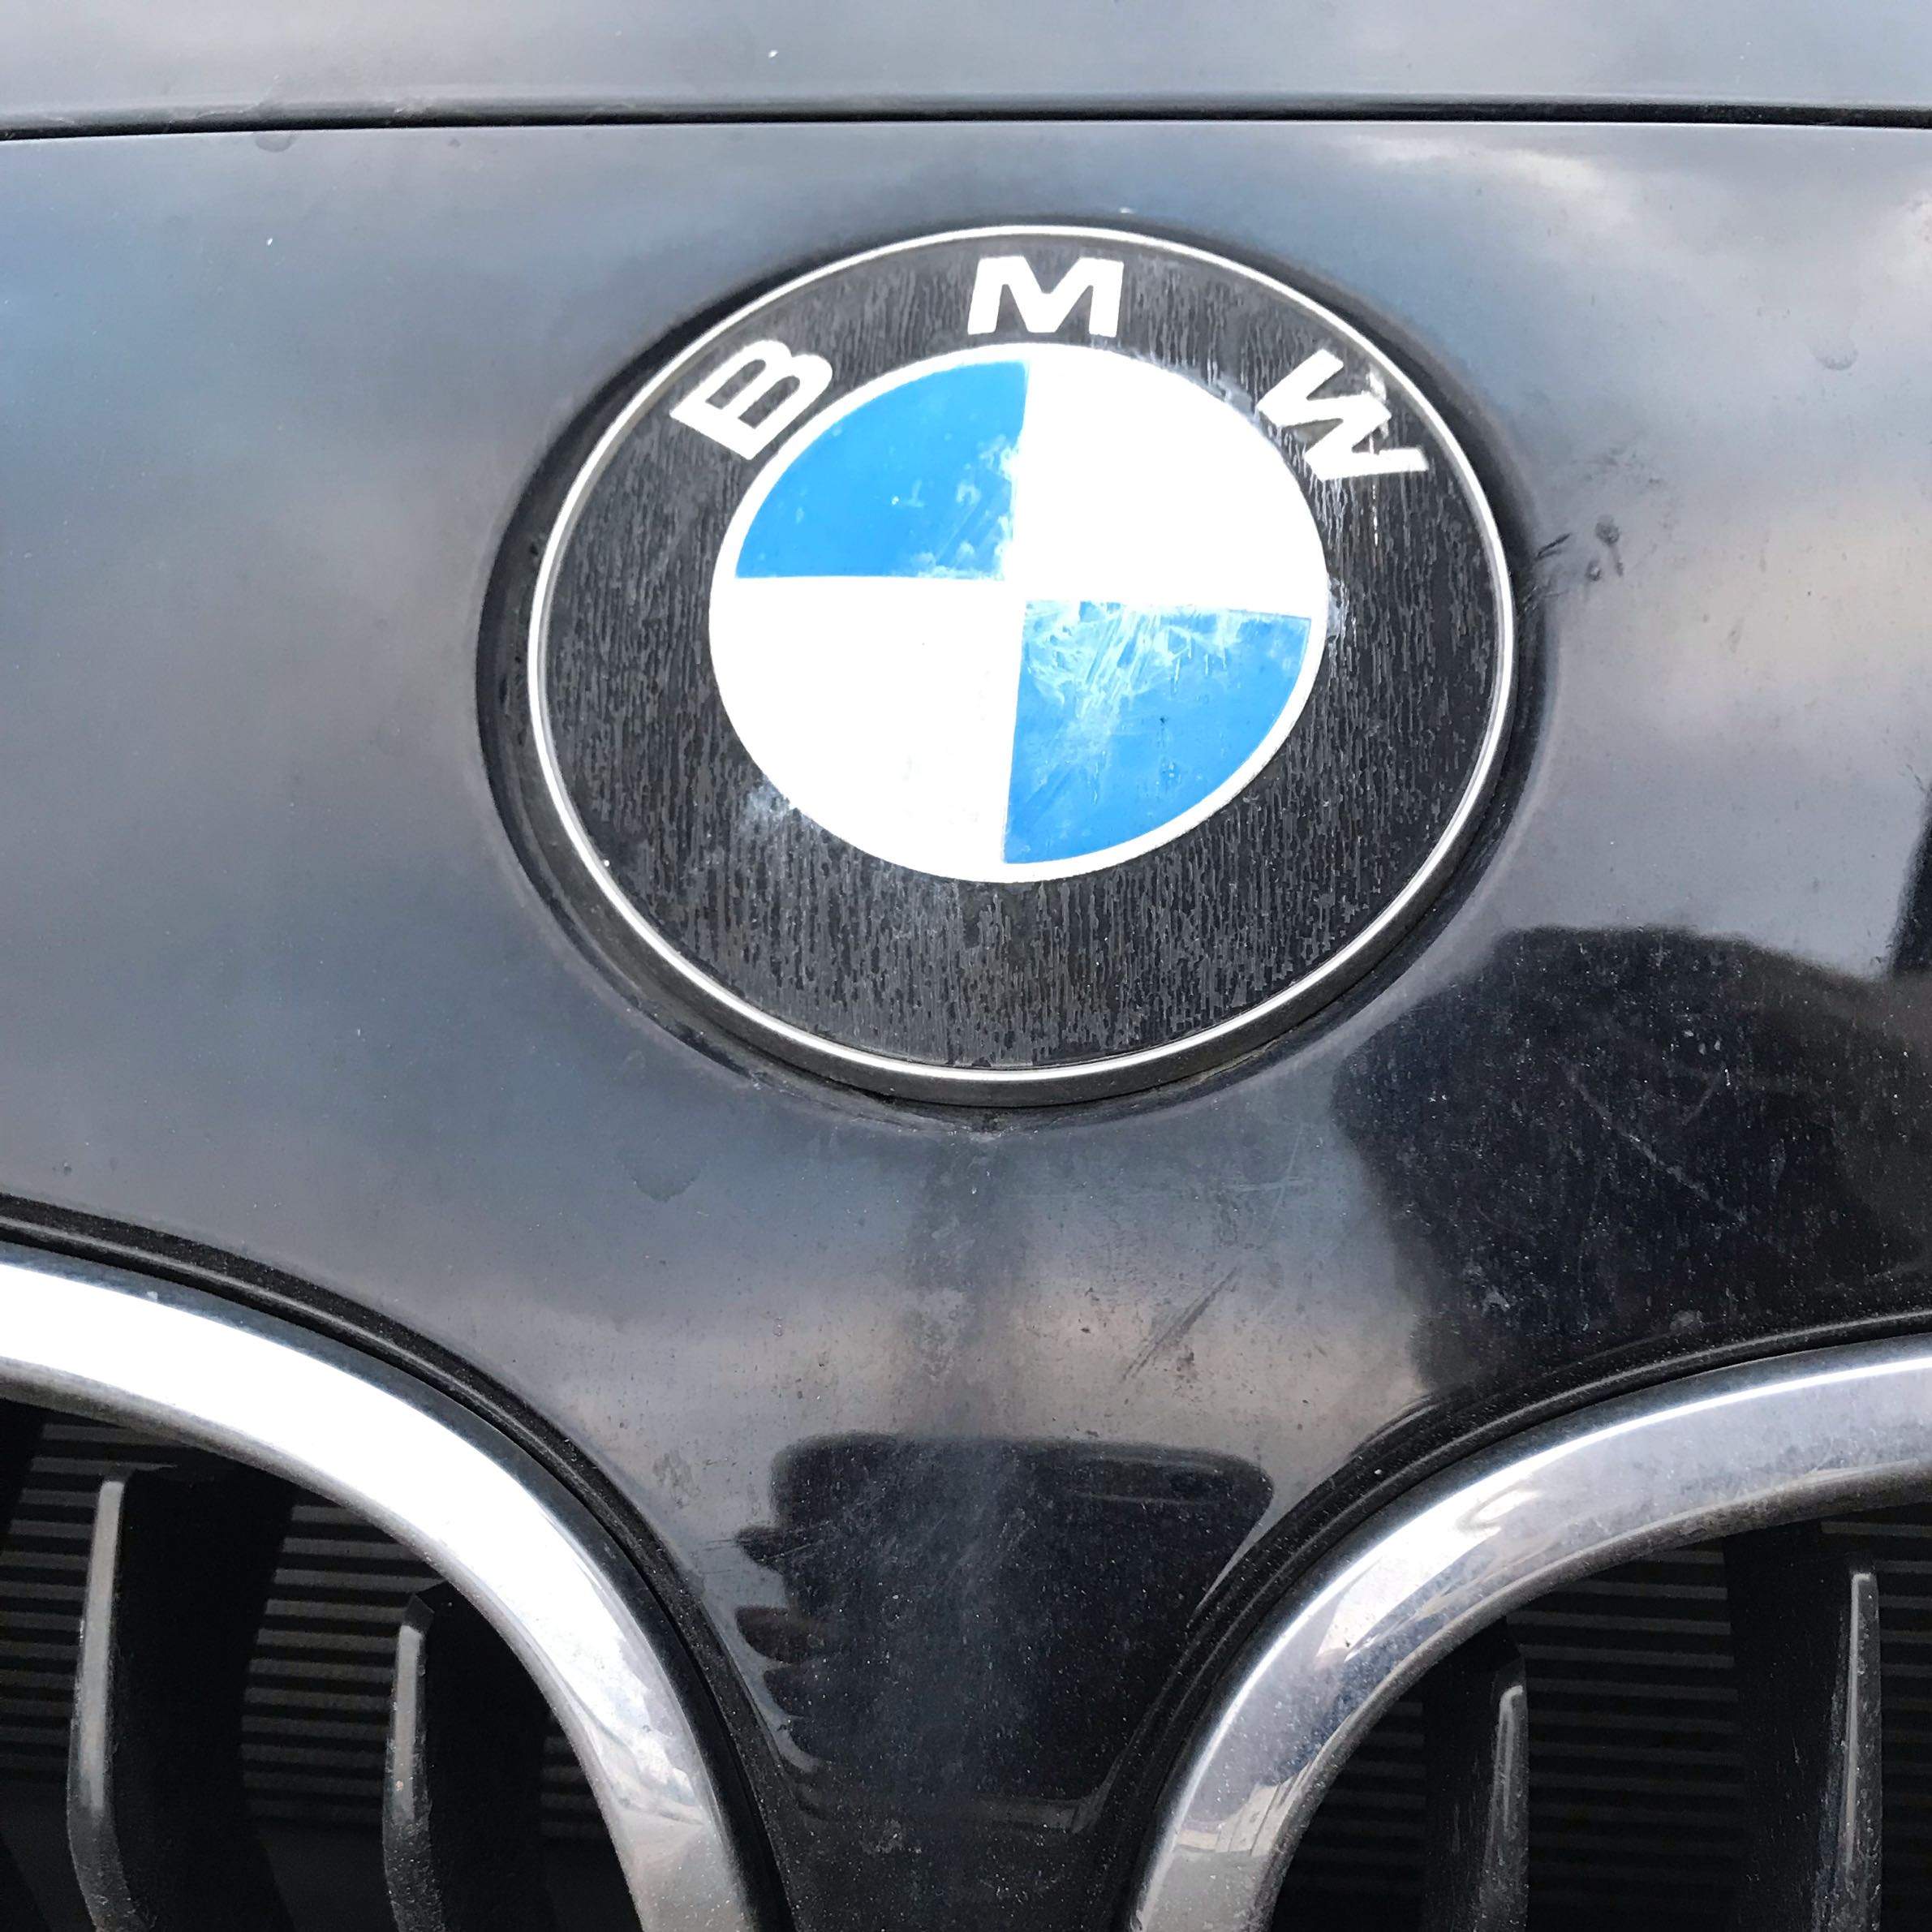 Schutzfolie beim 1er BMW Emblem auf Motorhaube eingebrannt was tun